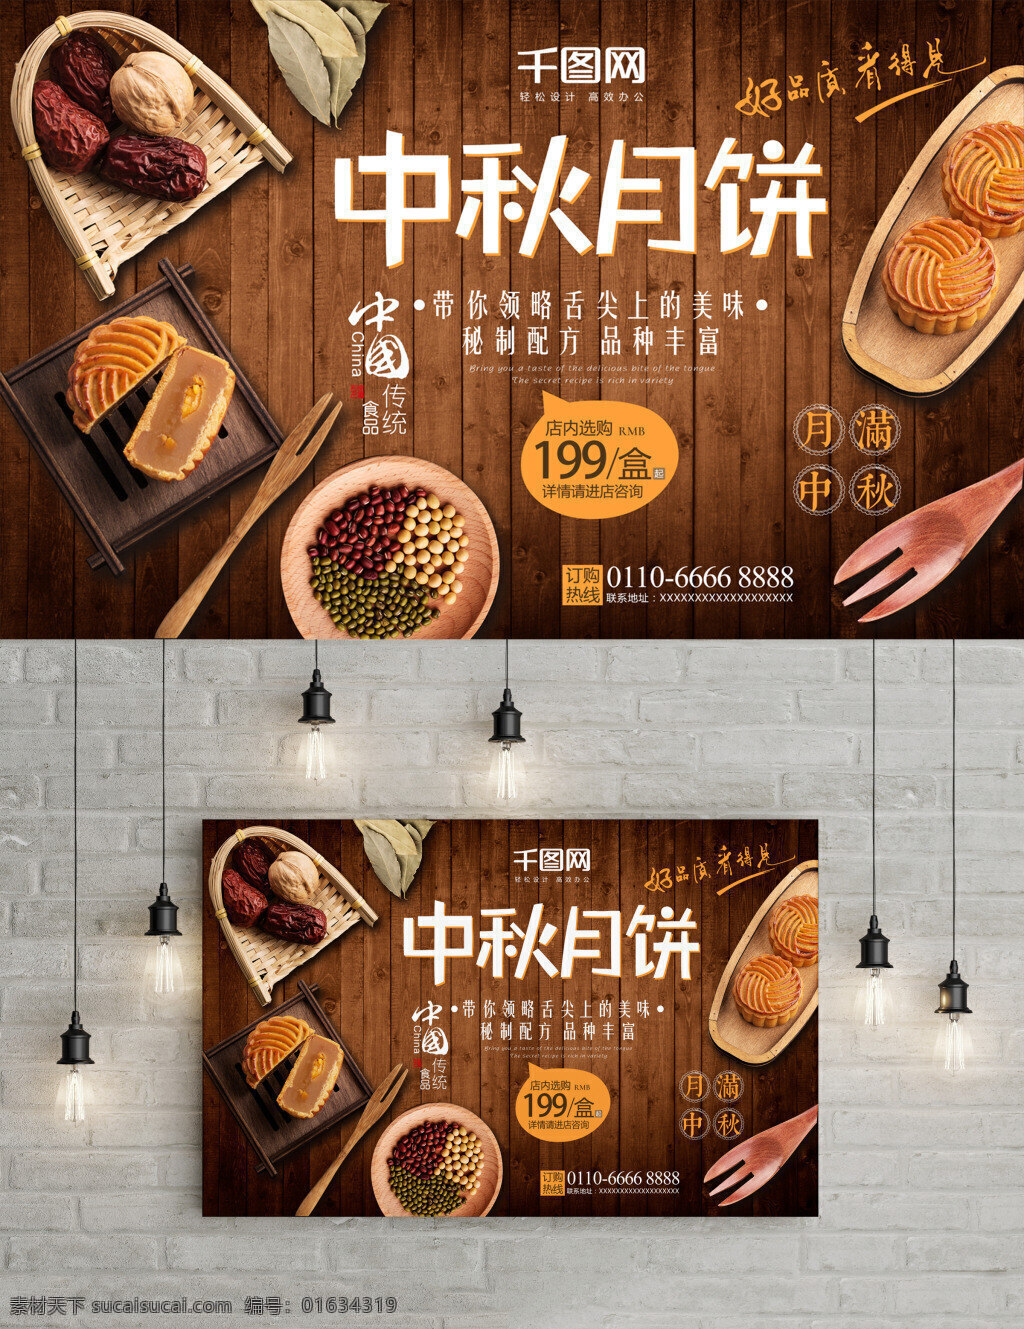 中秋节 月饼 促销 海报 古朴风格 木板 大枣 月饼促销 食品 食材 商品促销海报